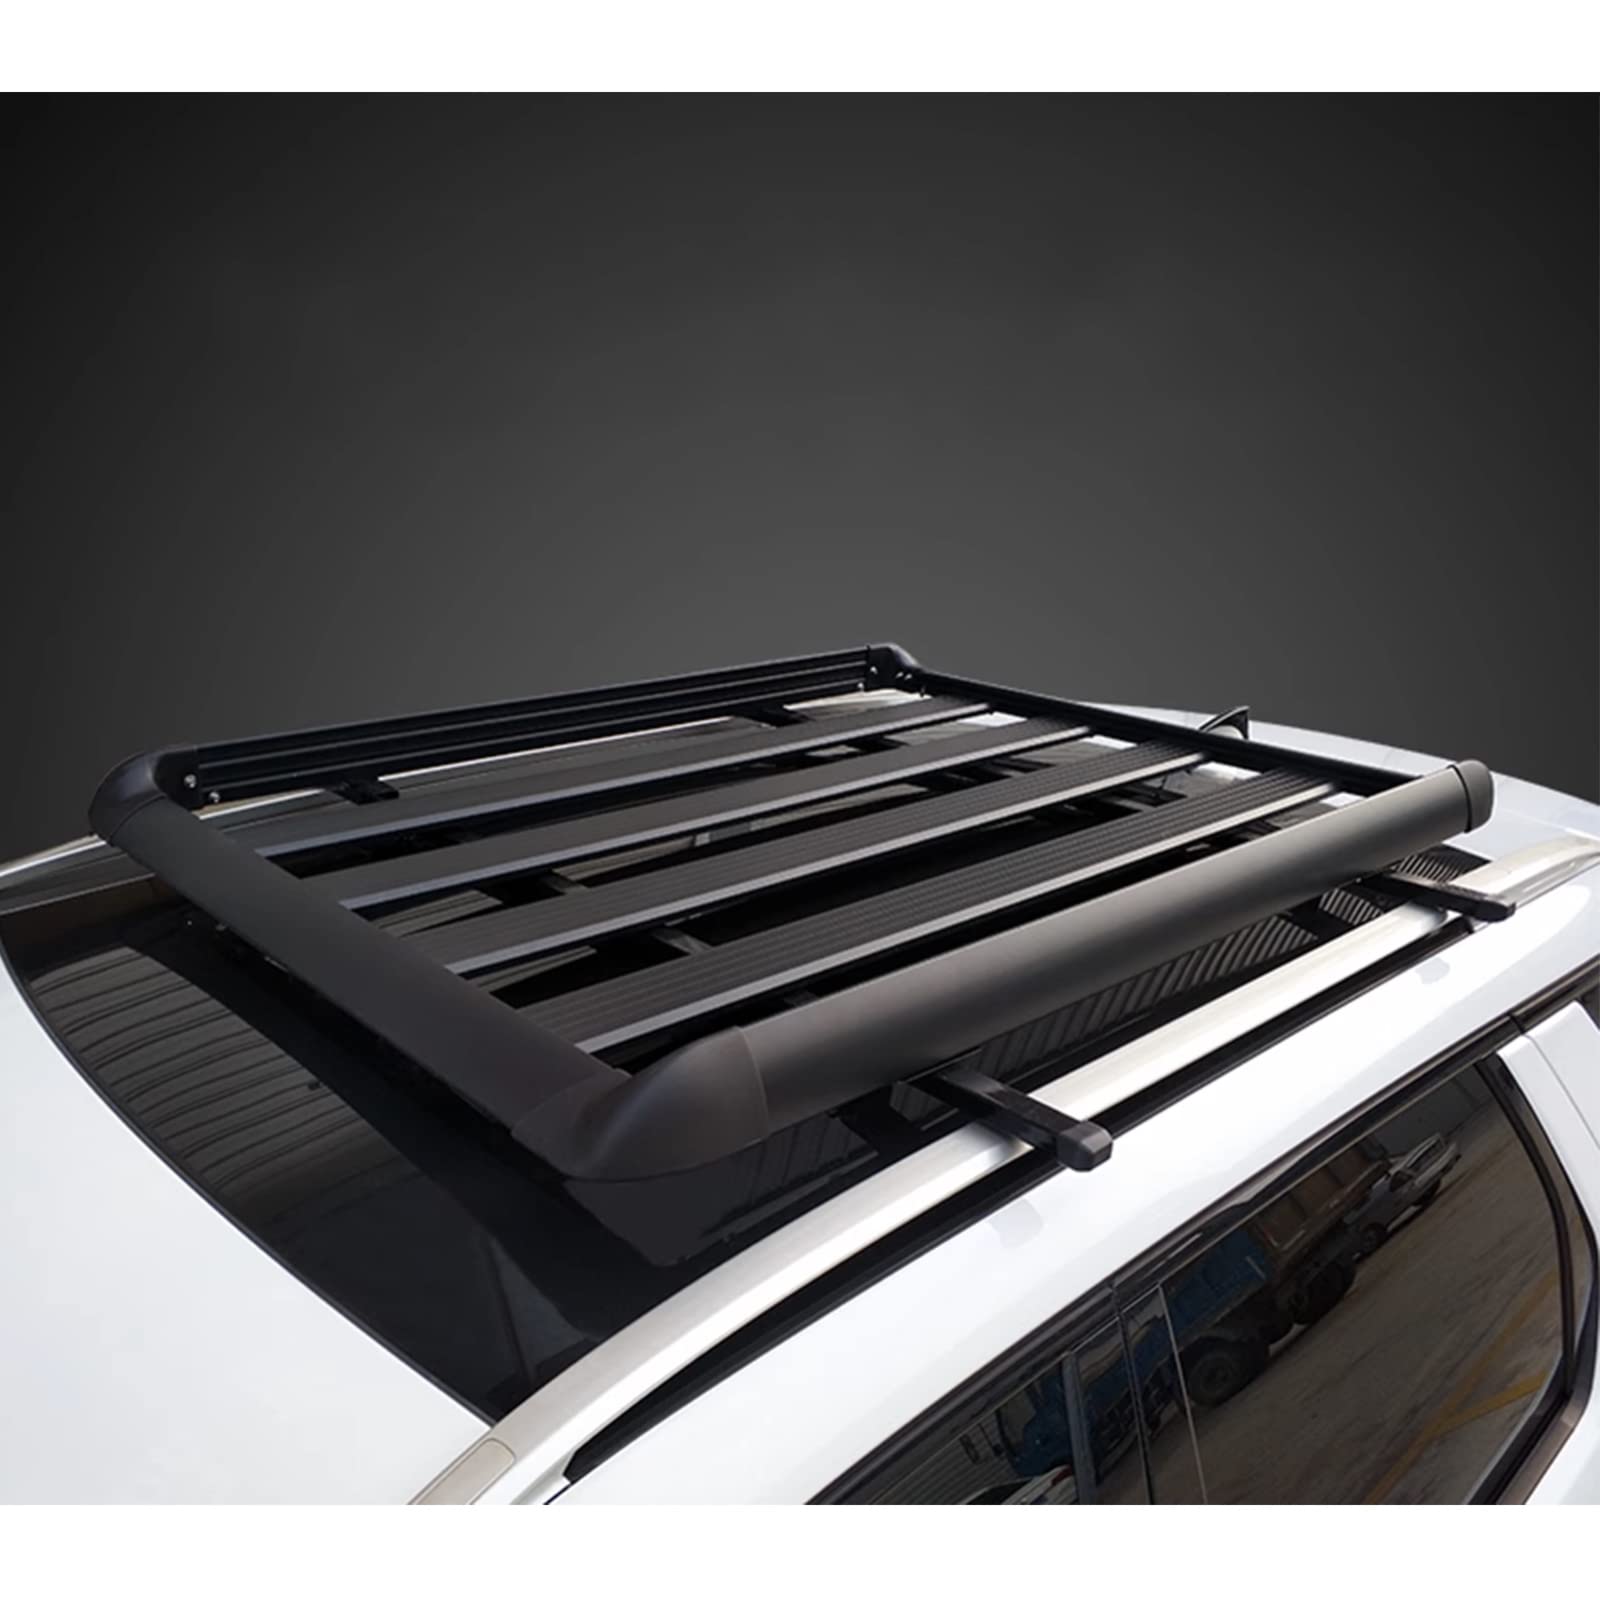 Aluminium Auto Dachkorb für Hyundai i40 VF Wagon Estate 2012-2017 2018 2019 Dachgepäckträger Korb Dachträger Dach mit Gepäcknetz/Regentuch/Sicherheitsseil Belastung 68 kg,Single-Layer-130cm von FERFXN